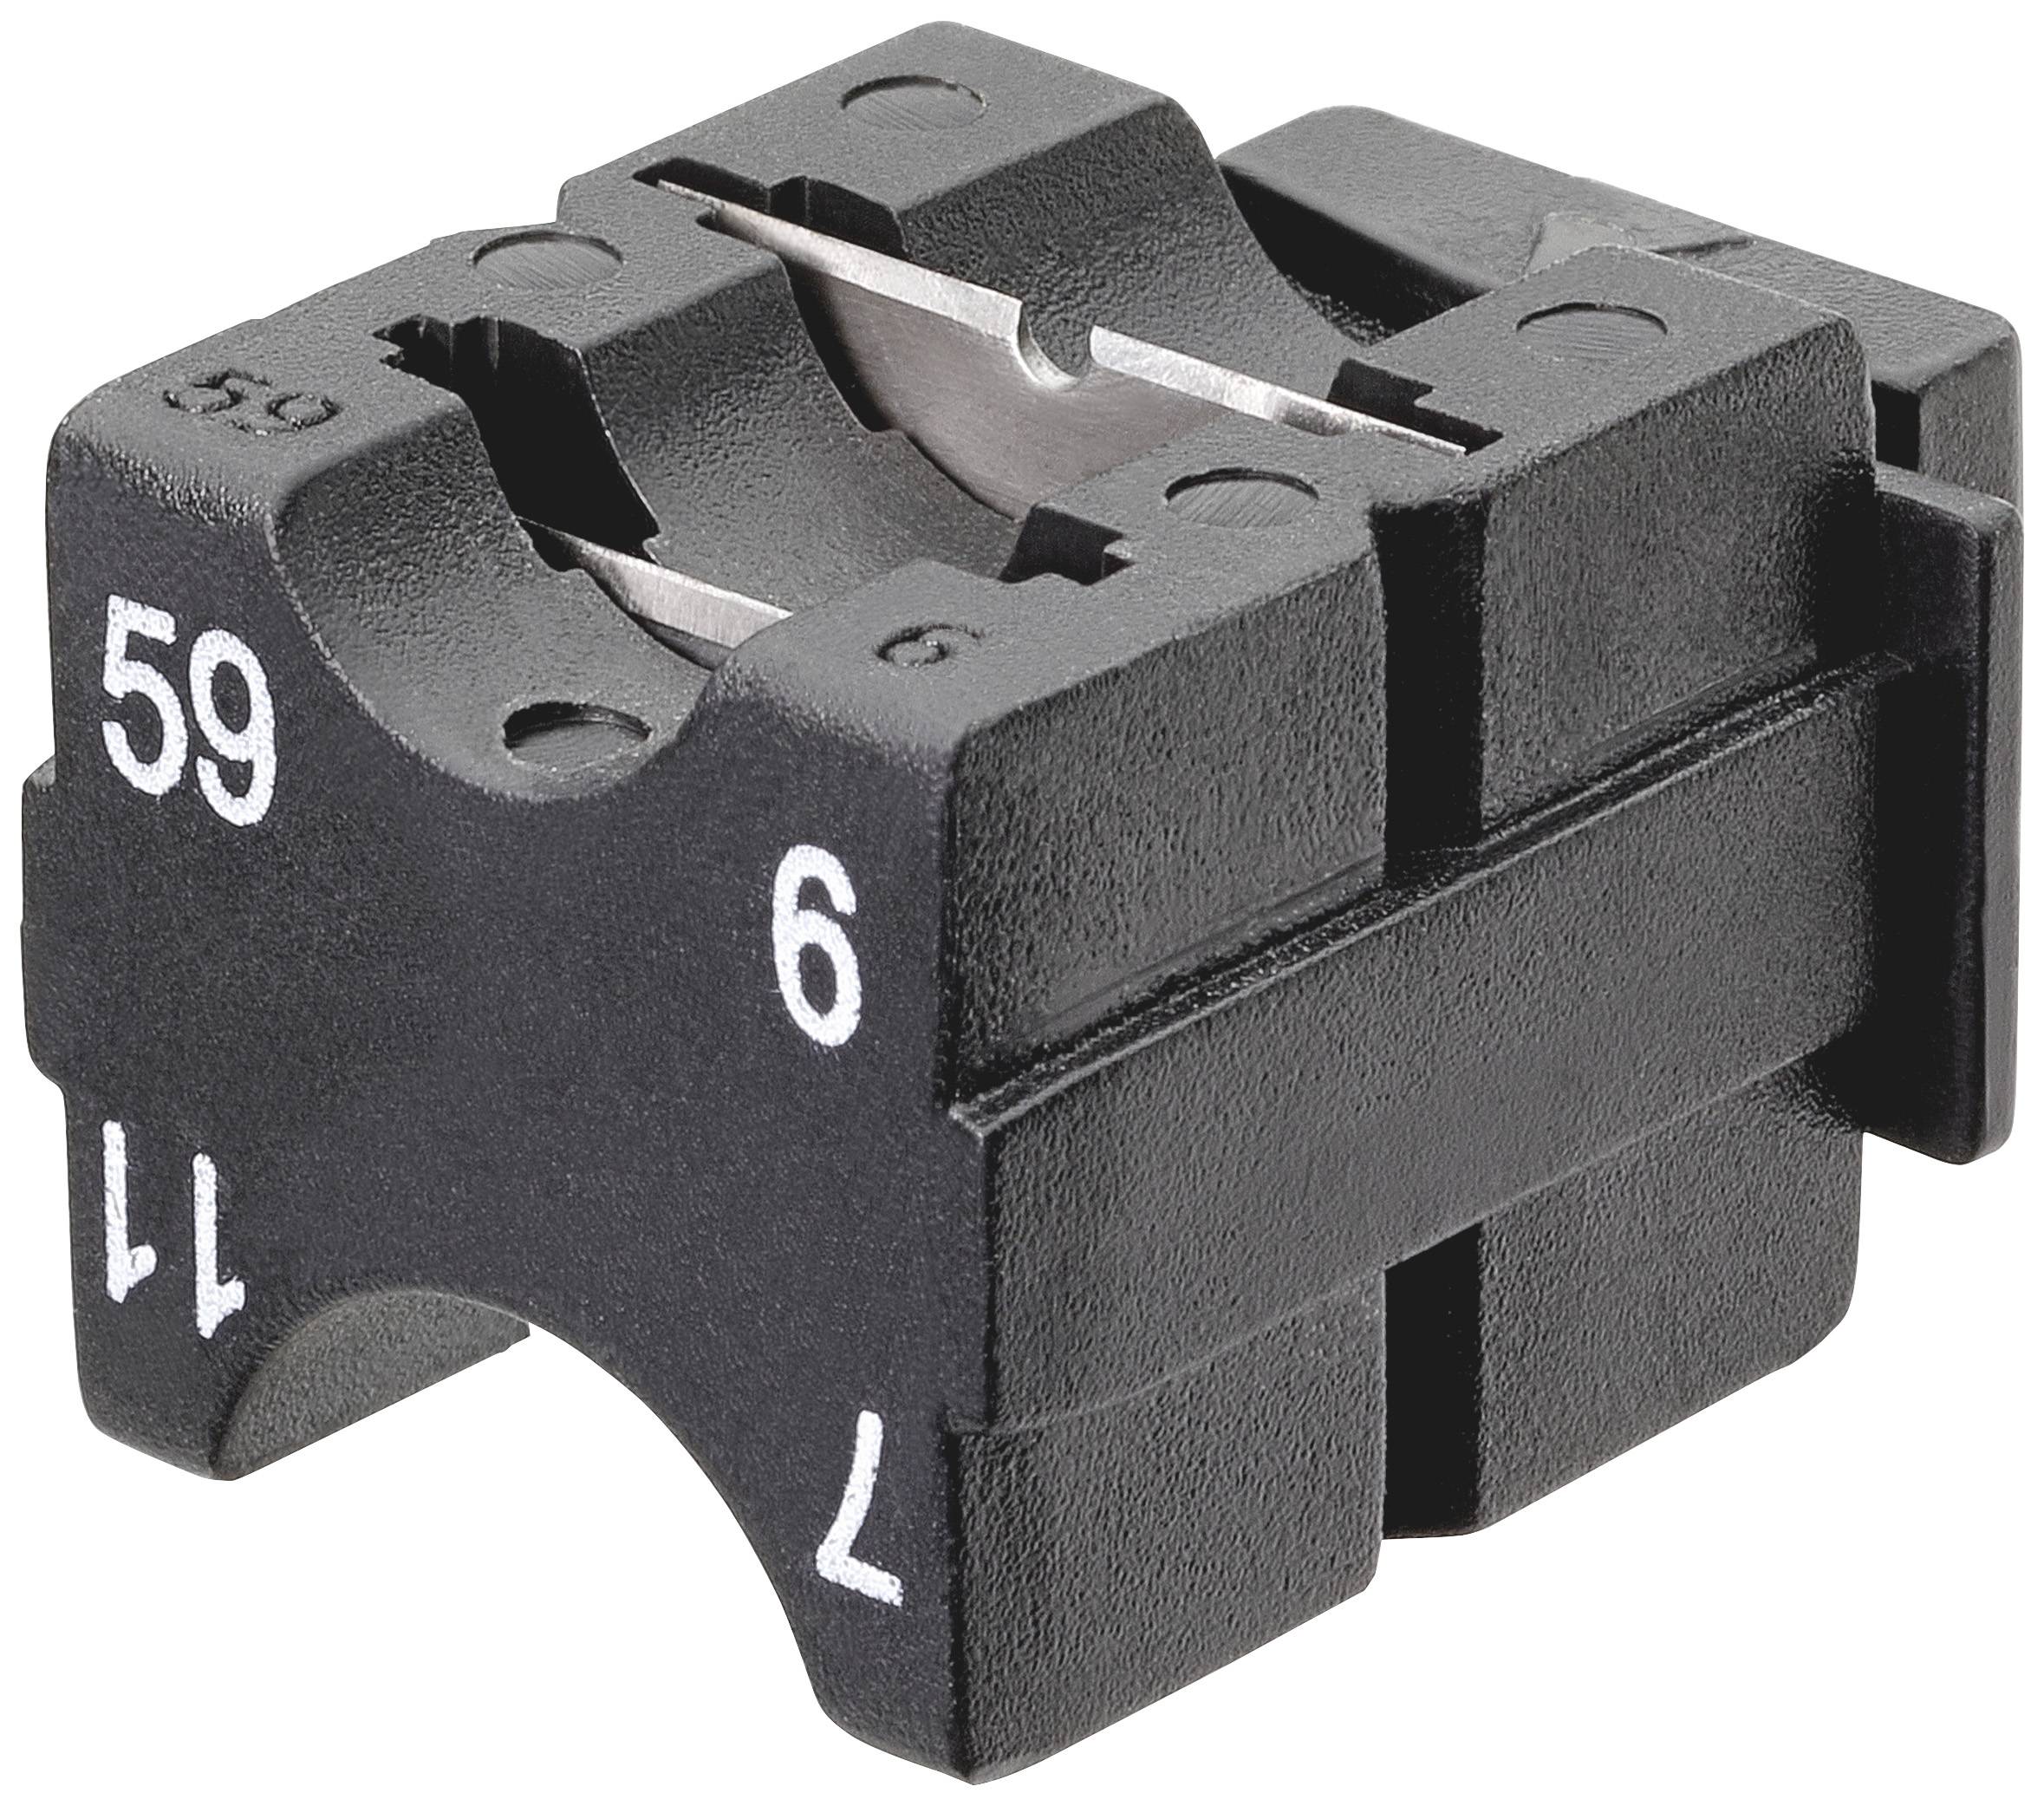 KNIPEX 16 69 06 01 Ersatz-Messerblock Passend für Marke (Zangen) Knipex